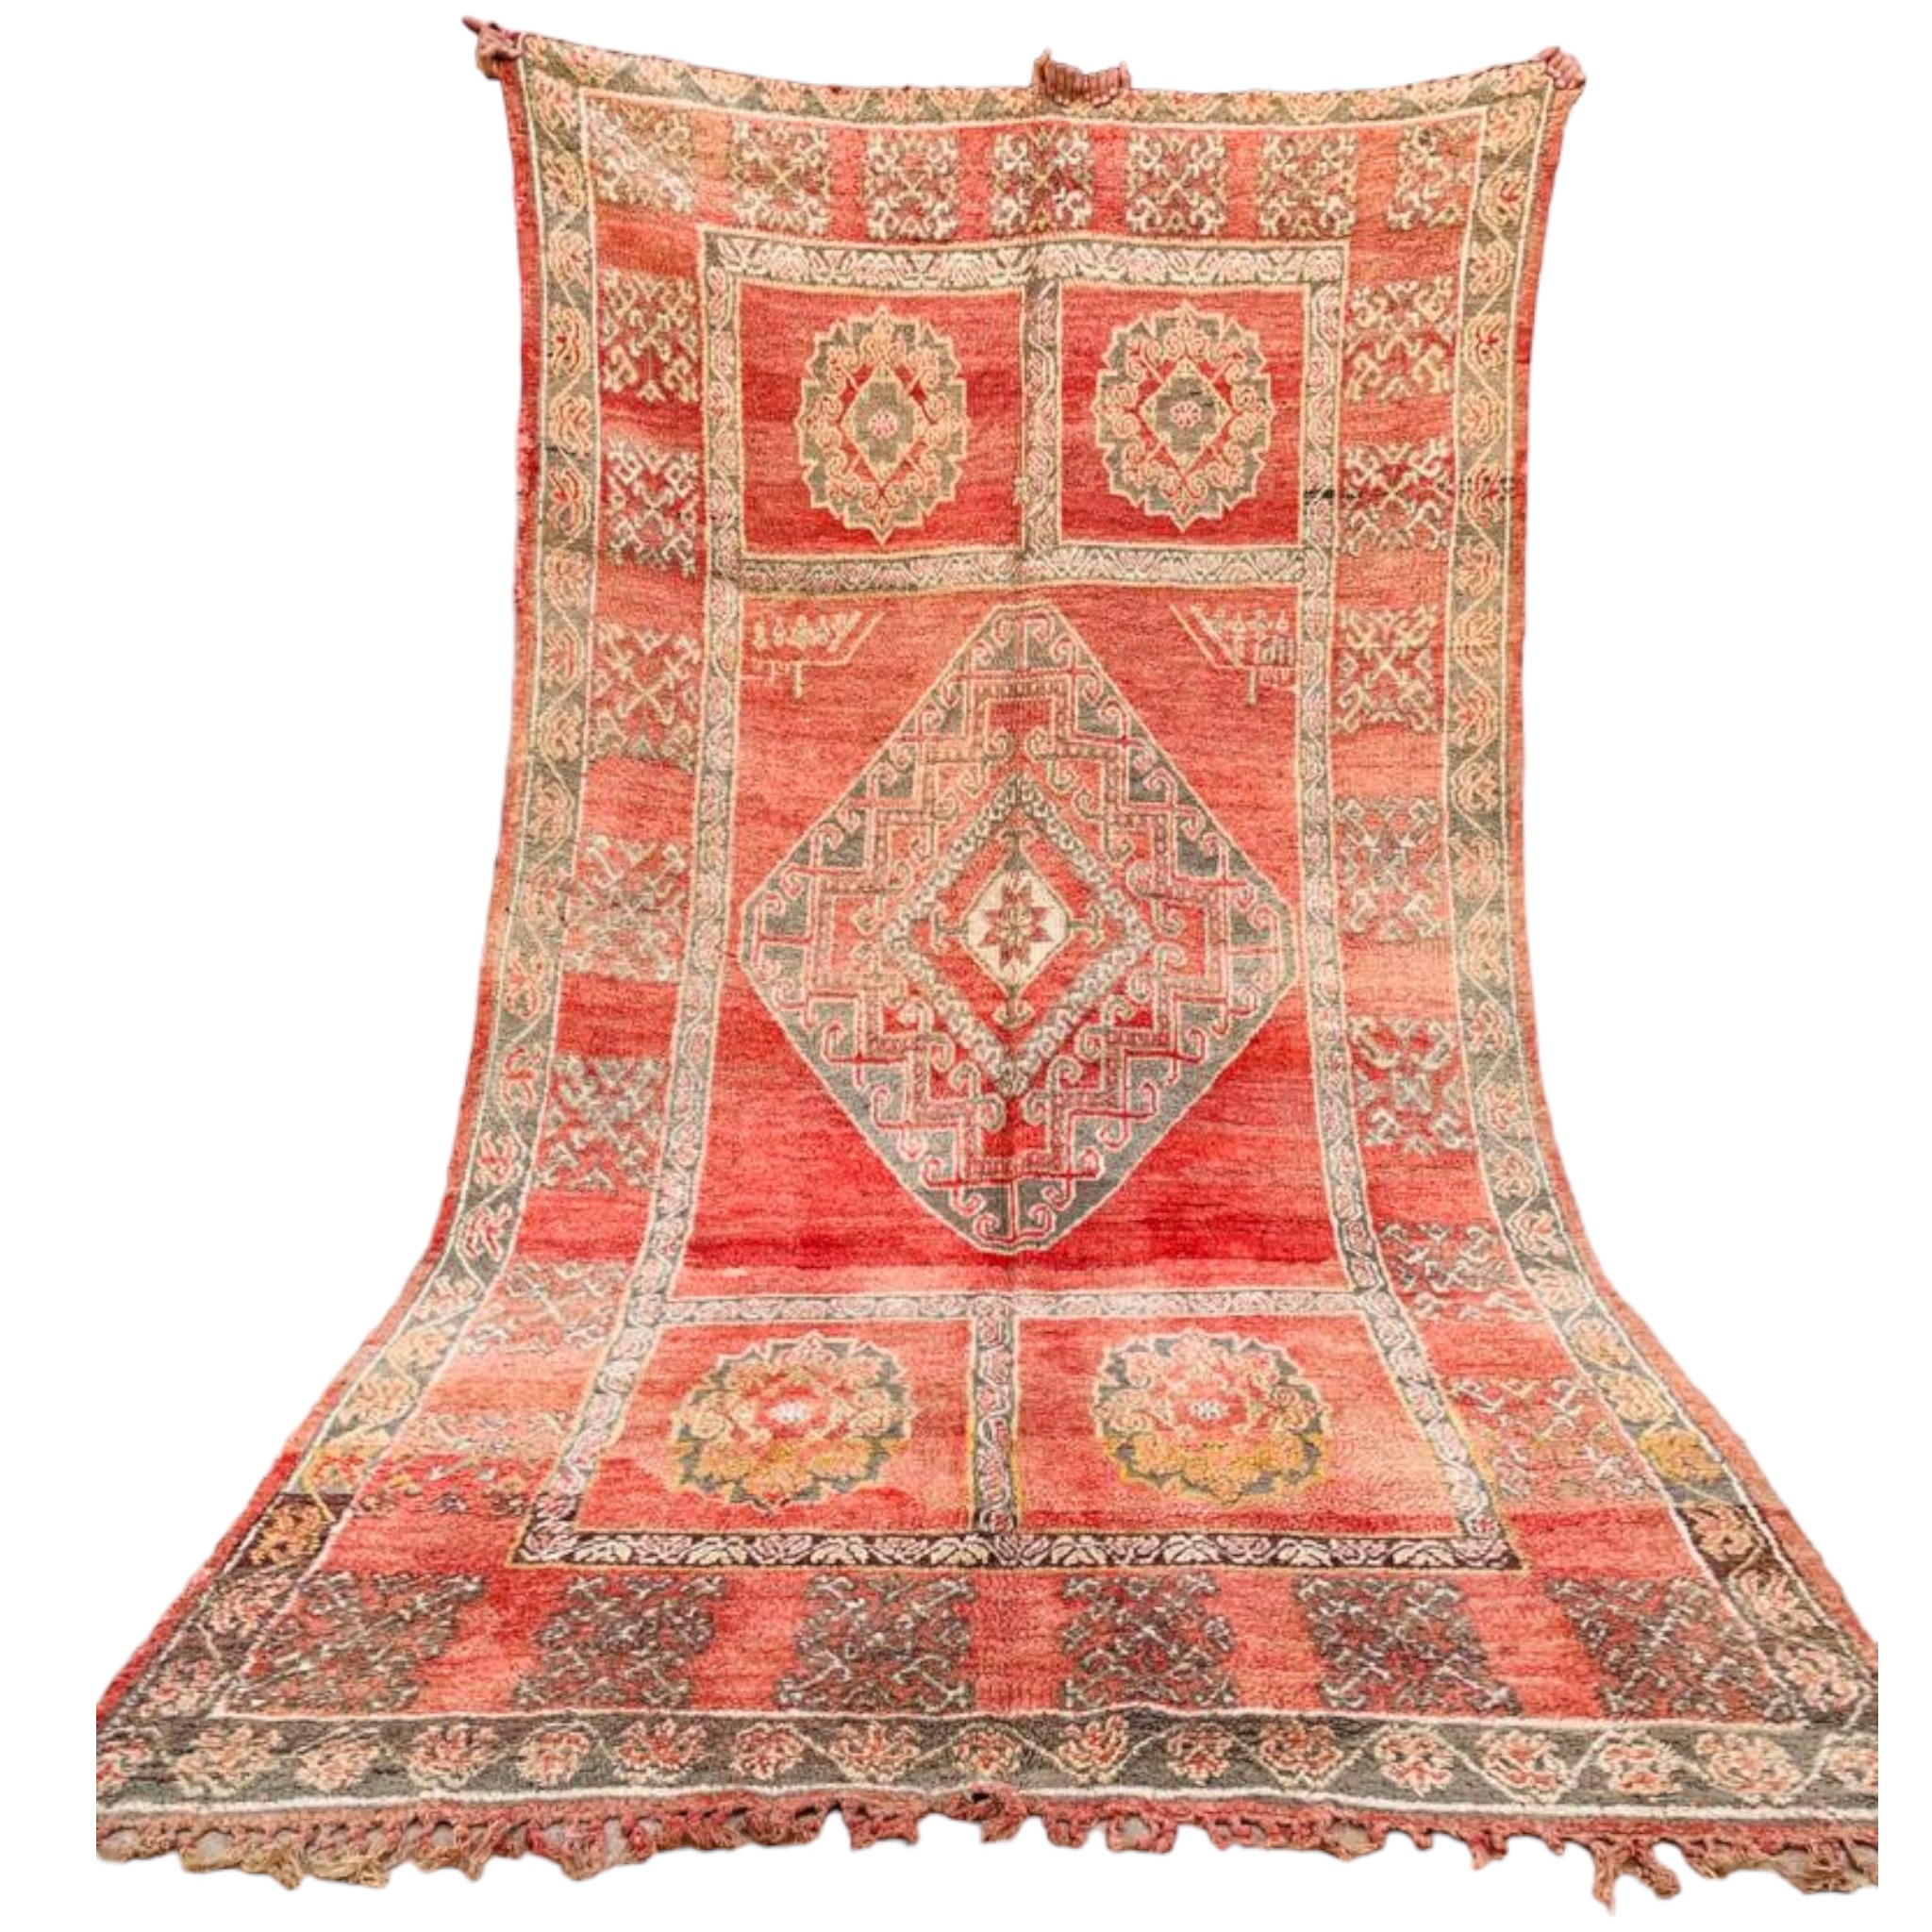 Beautiful vintage moroccan wool rug